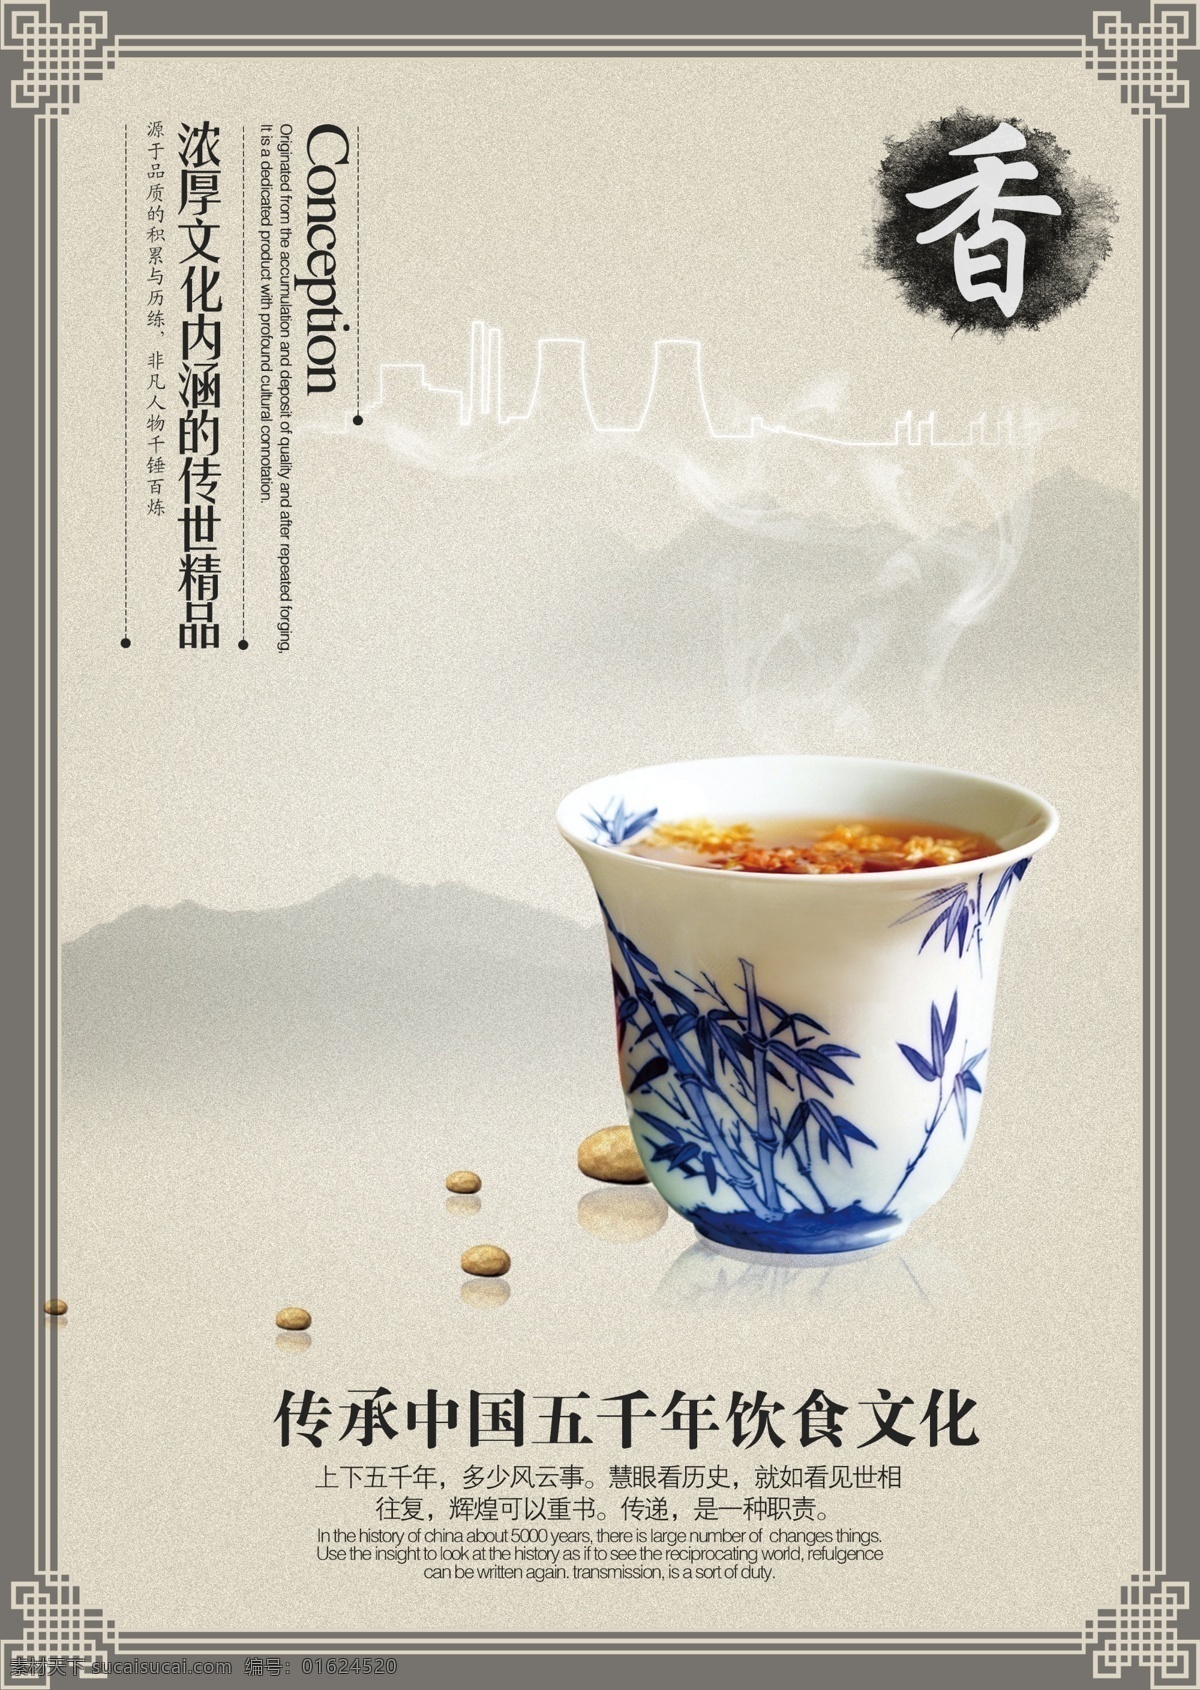 中国 传统 饮食文化 中国古典文化 茶香 水墨 卷轴 茶杯 筷子 画卷 国内广告设计 广告设计模板 源文件 中国风情